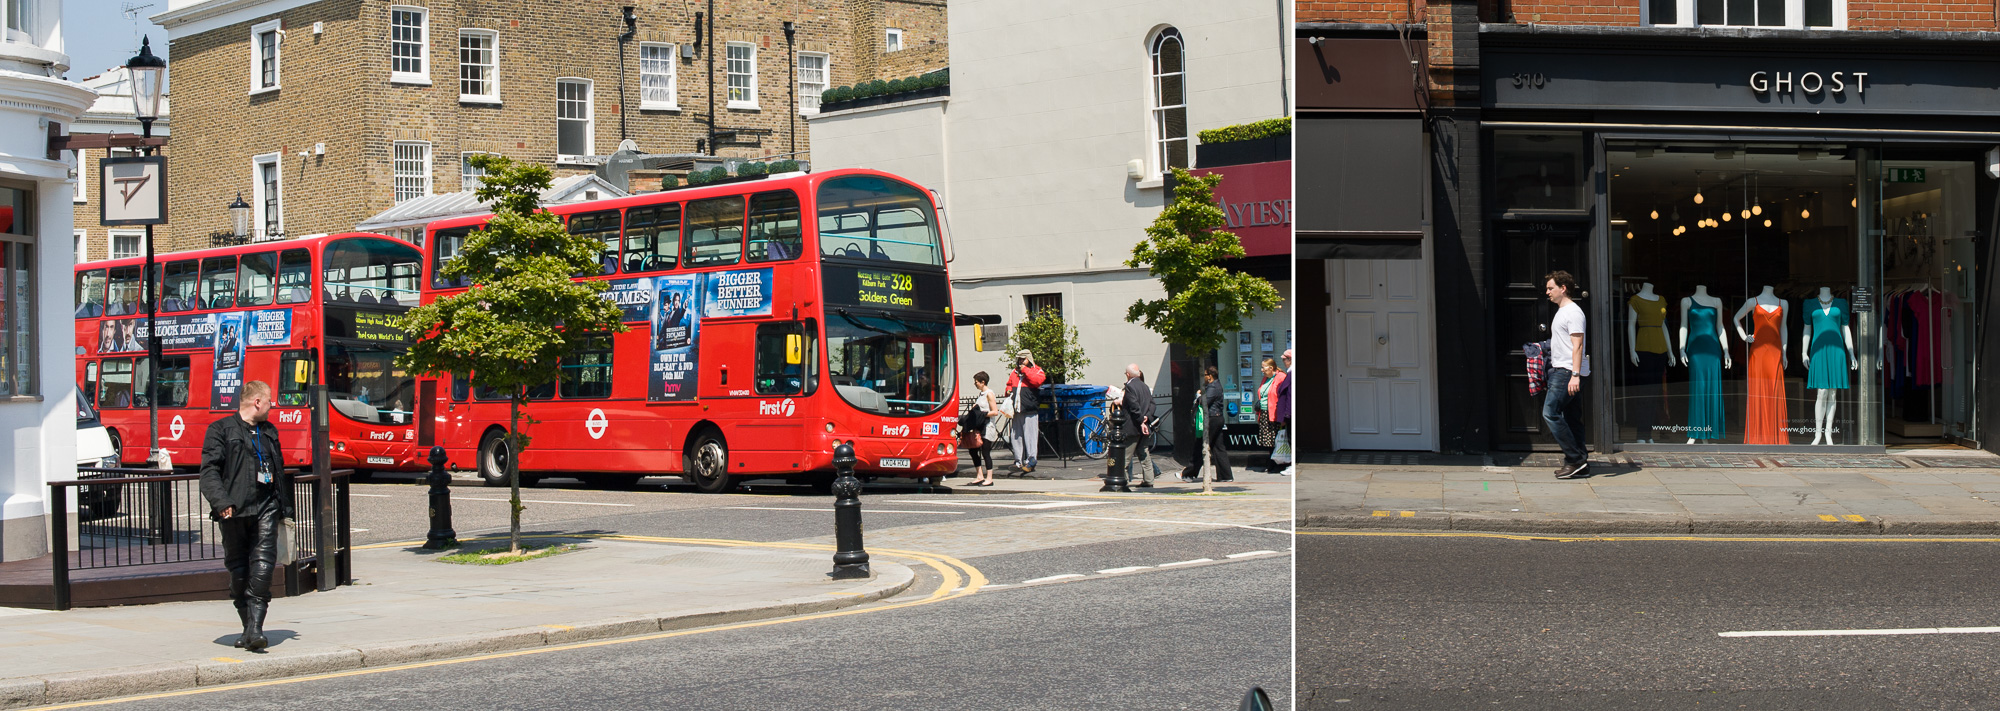 Chelsea, King's Road : Bus à deux étages